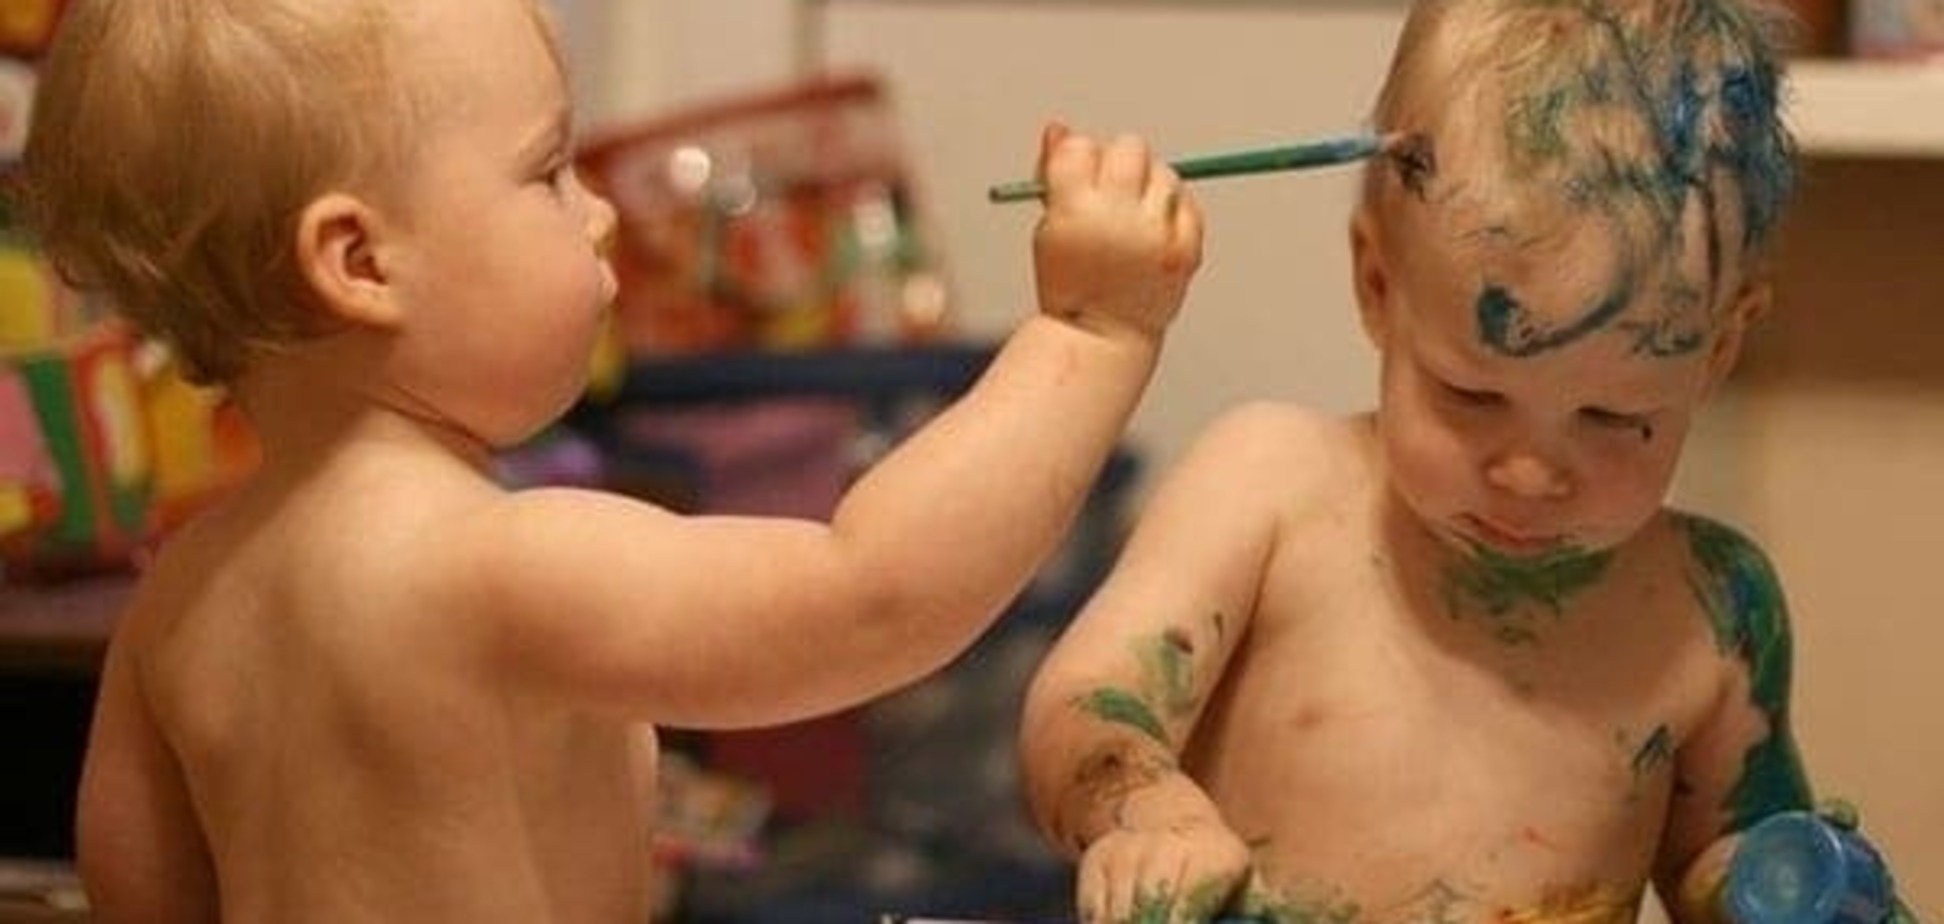 «Я художник, я так вижу»: забавные фотографии рисующих малышей